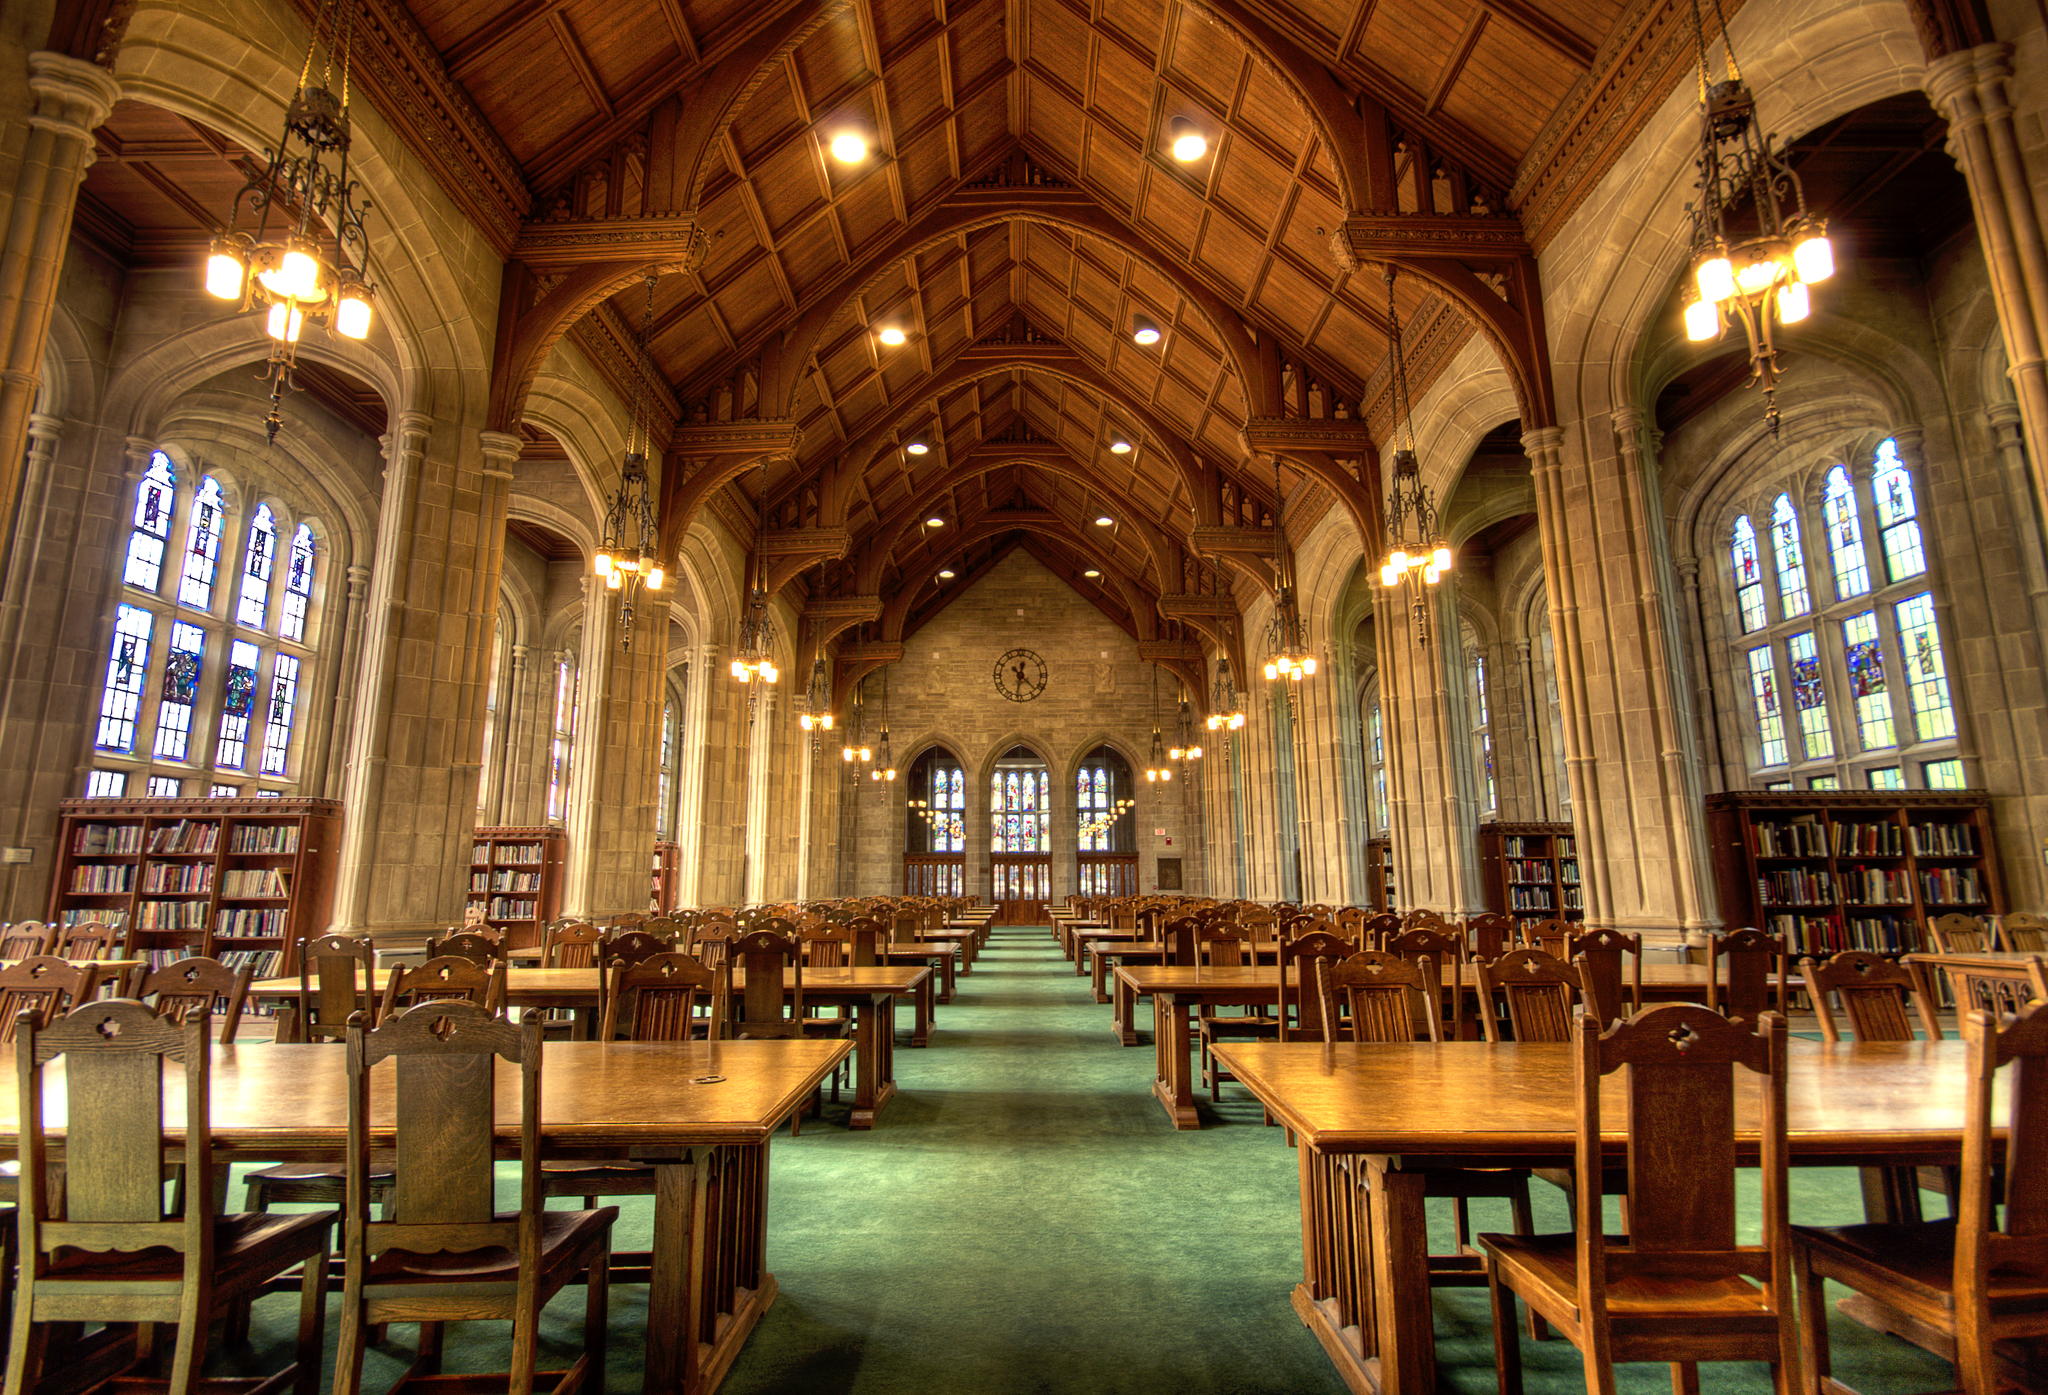 Bapst Library, Boston College, Boston, MA